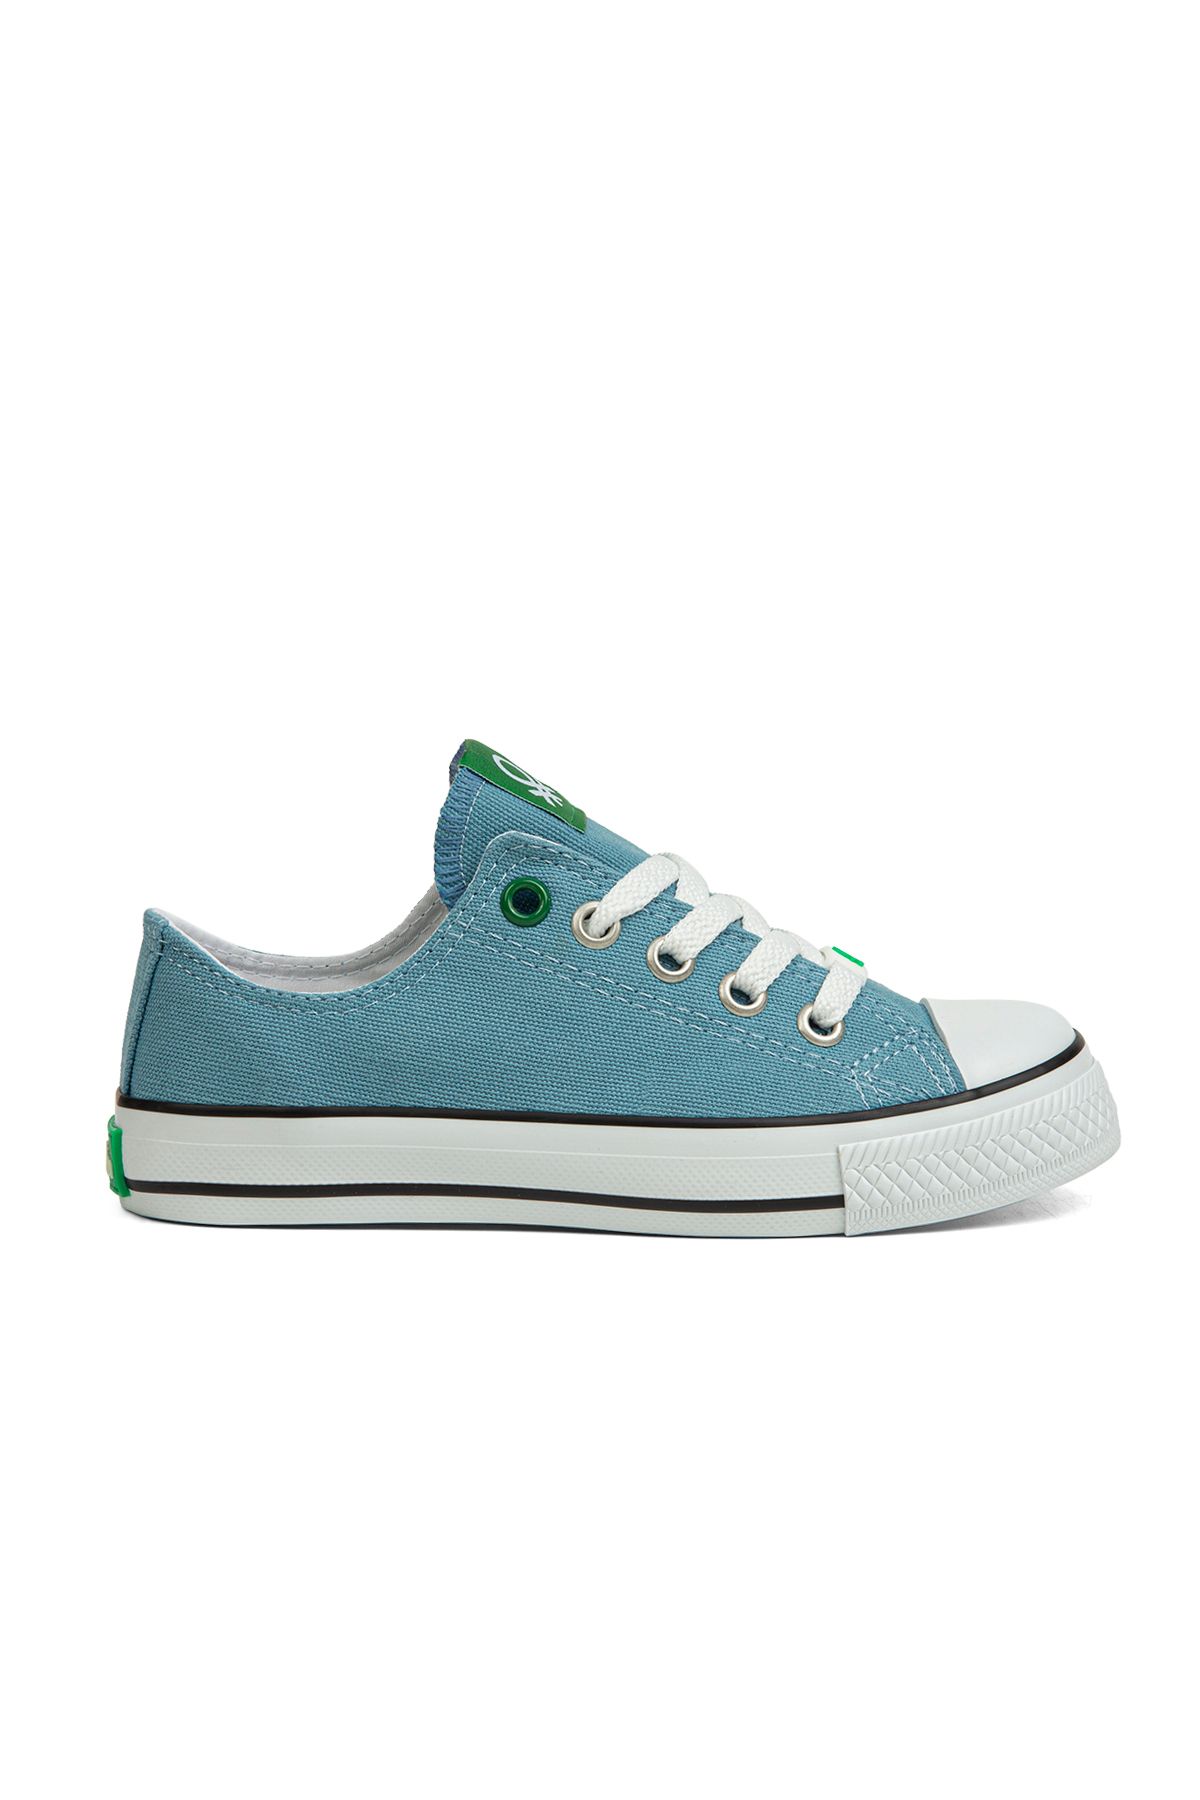 Benetton ® | Bn-30685-3374 Mavi - Çocuk Spor Ayakkabı